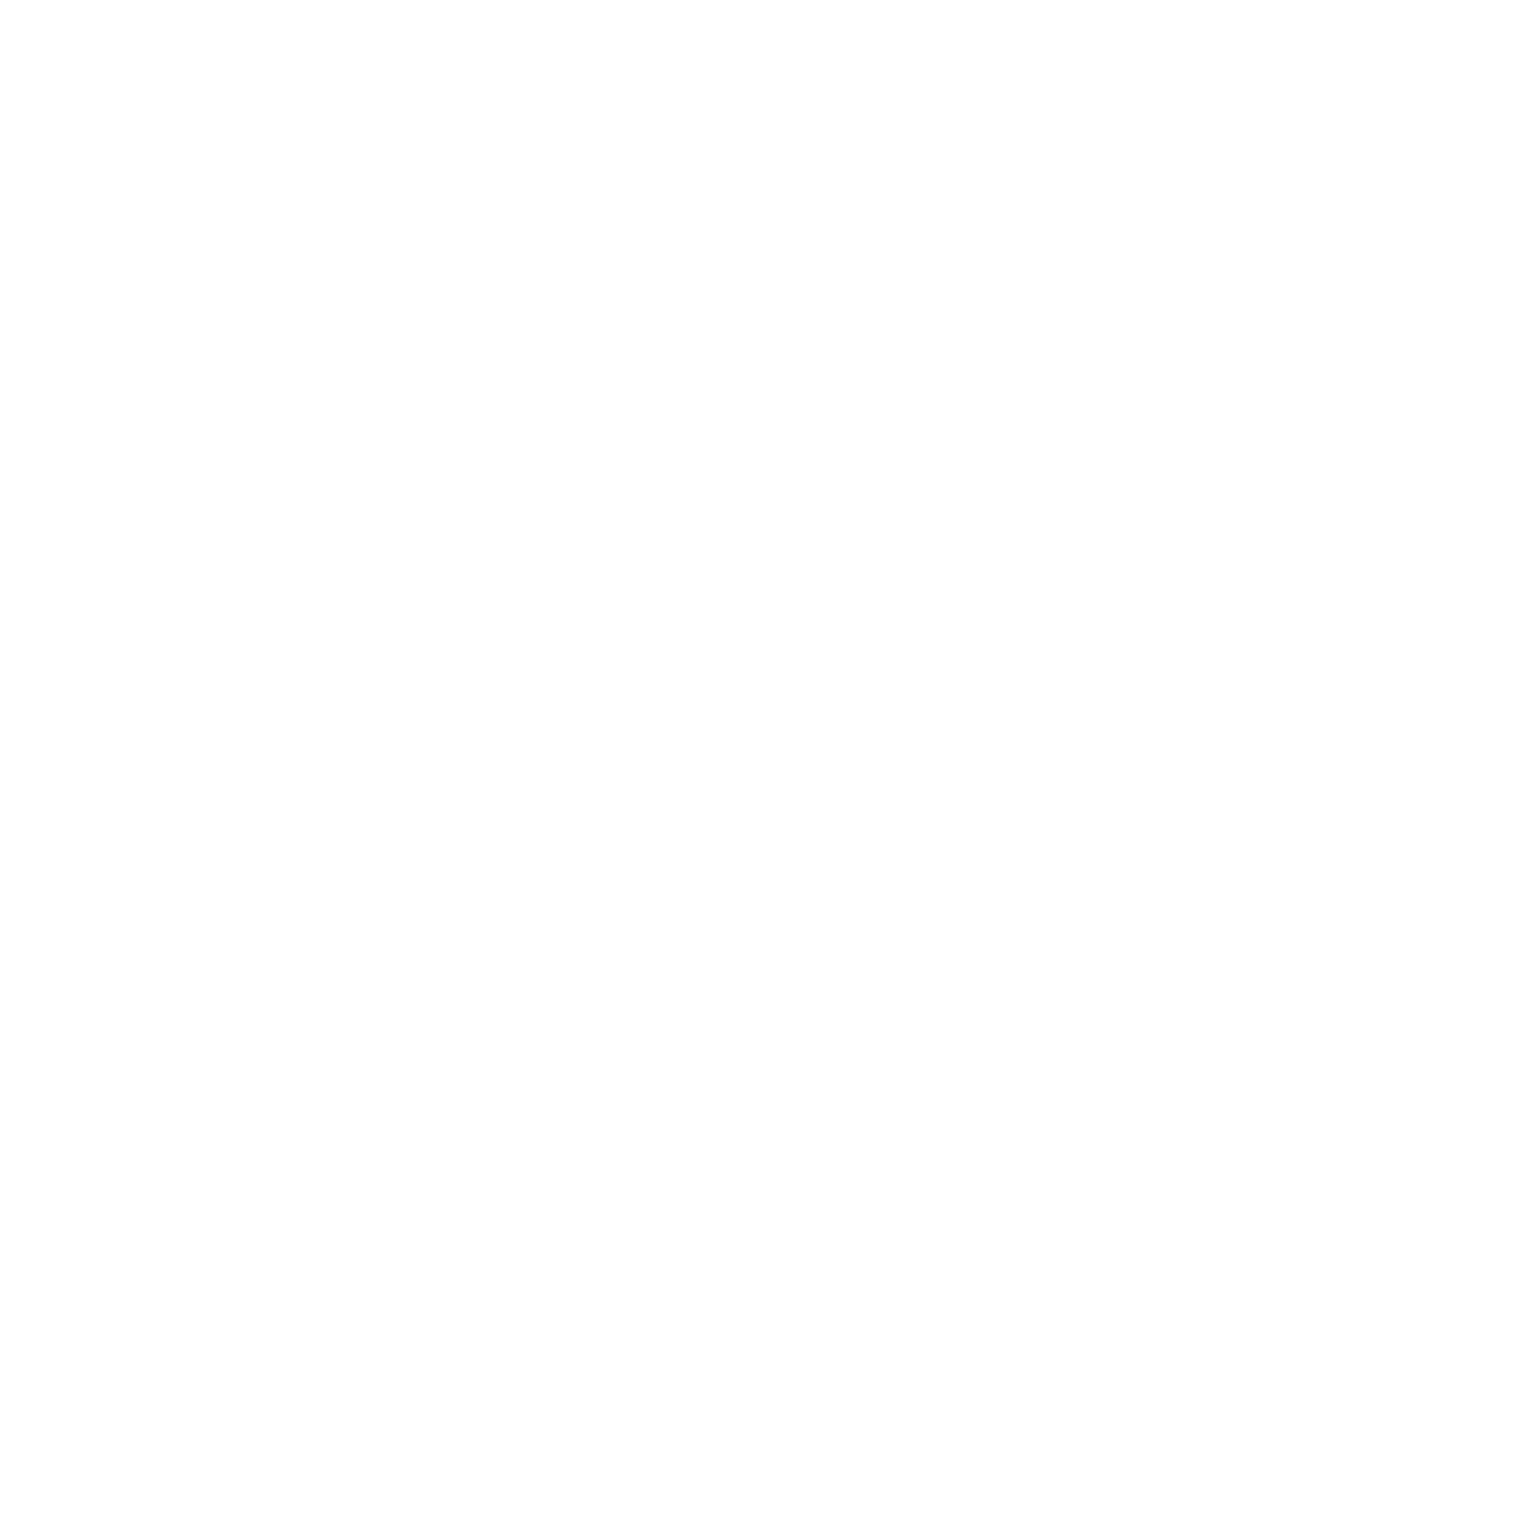 TopBuild logo for dark backgrounds (transparent PNG)